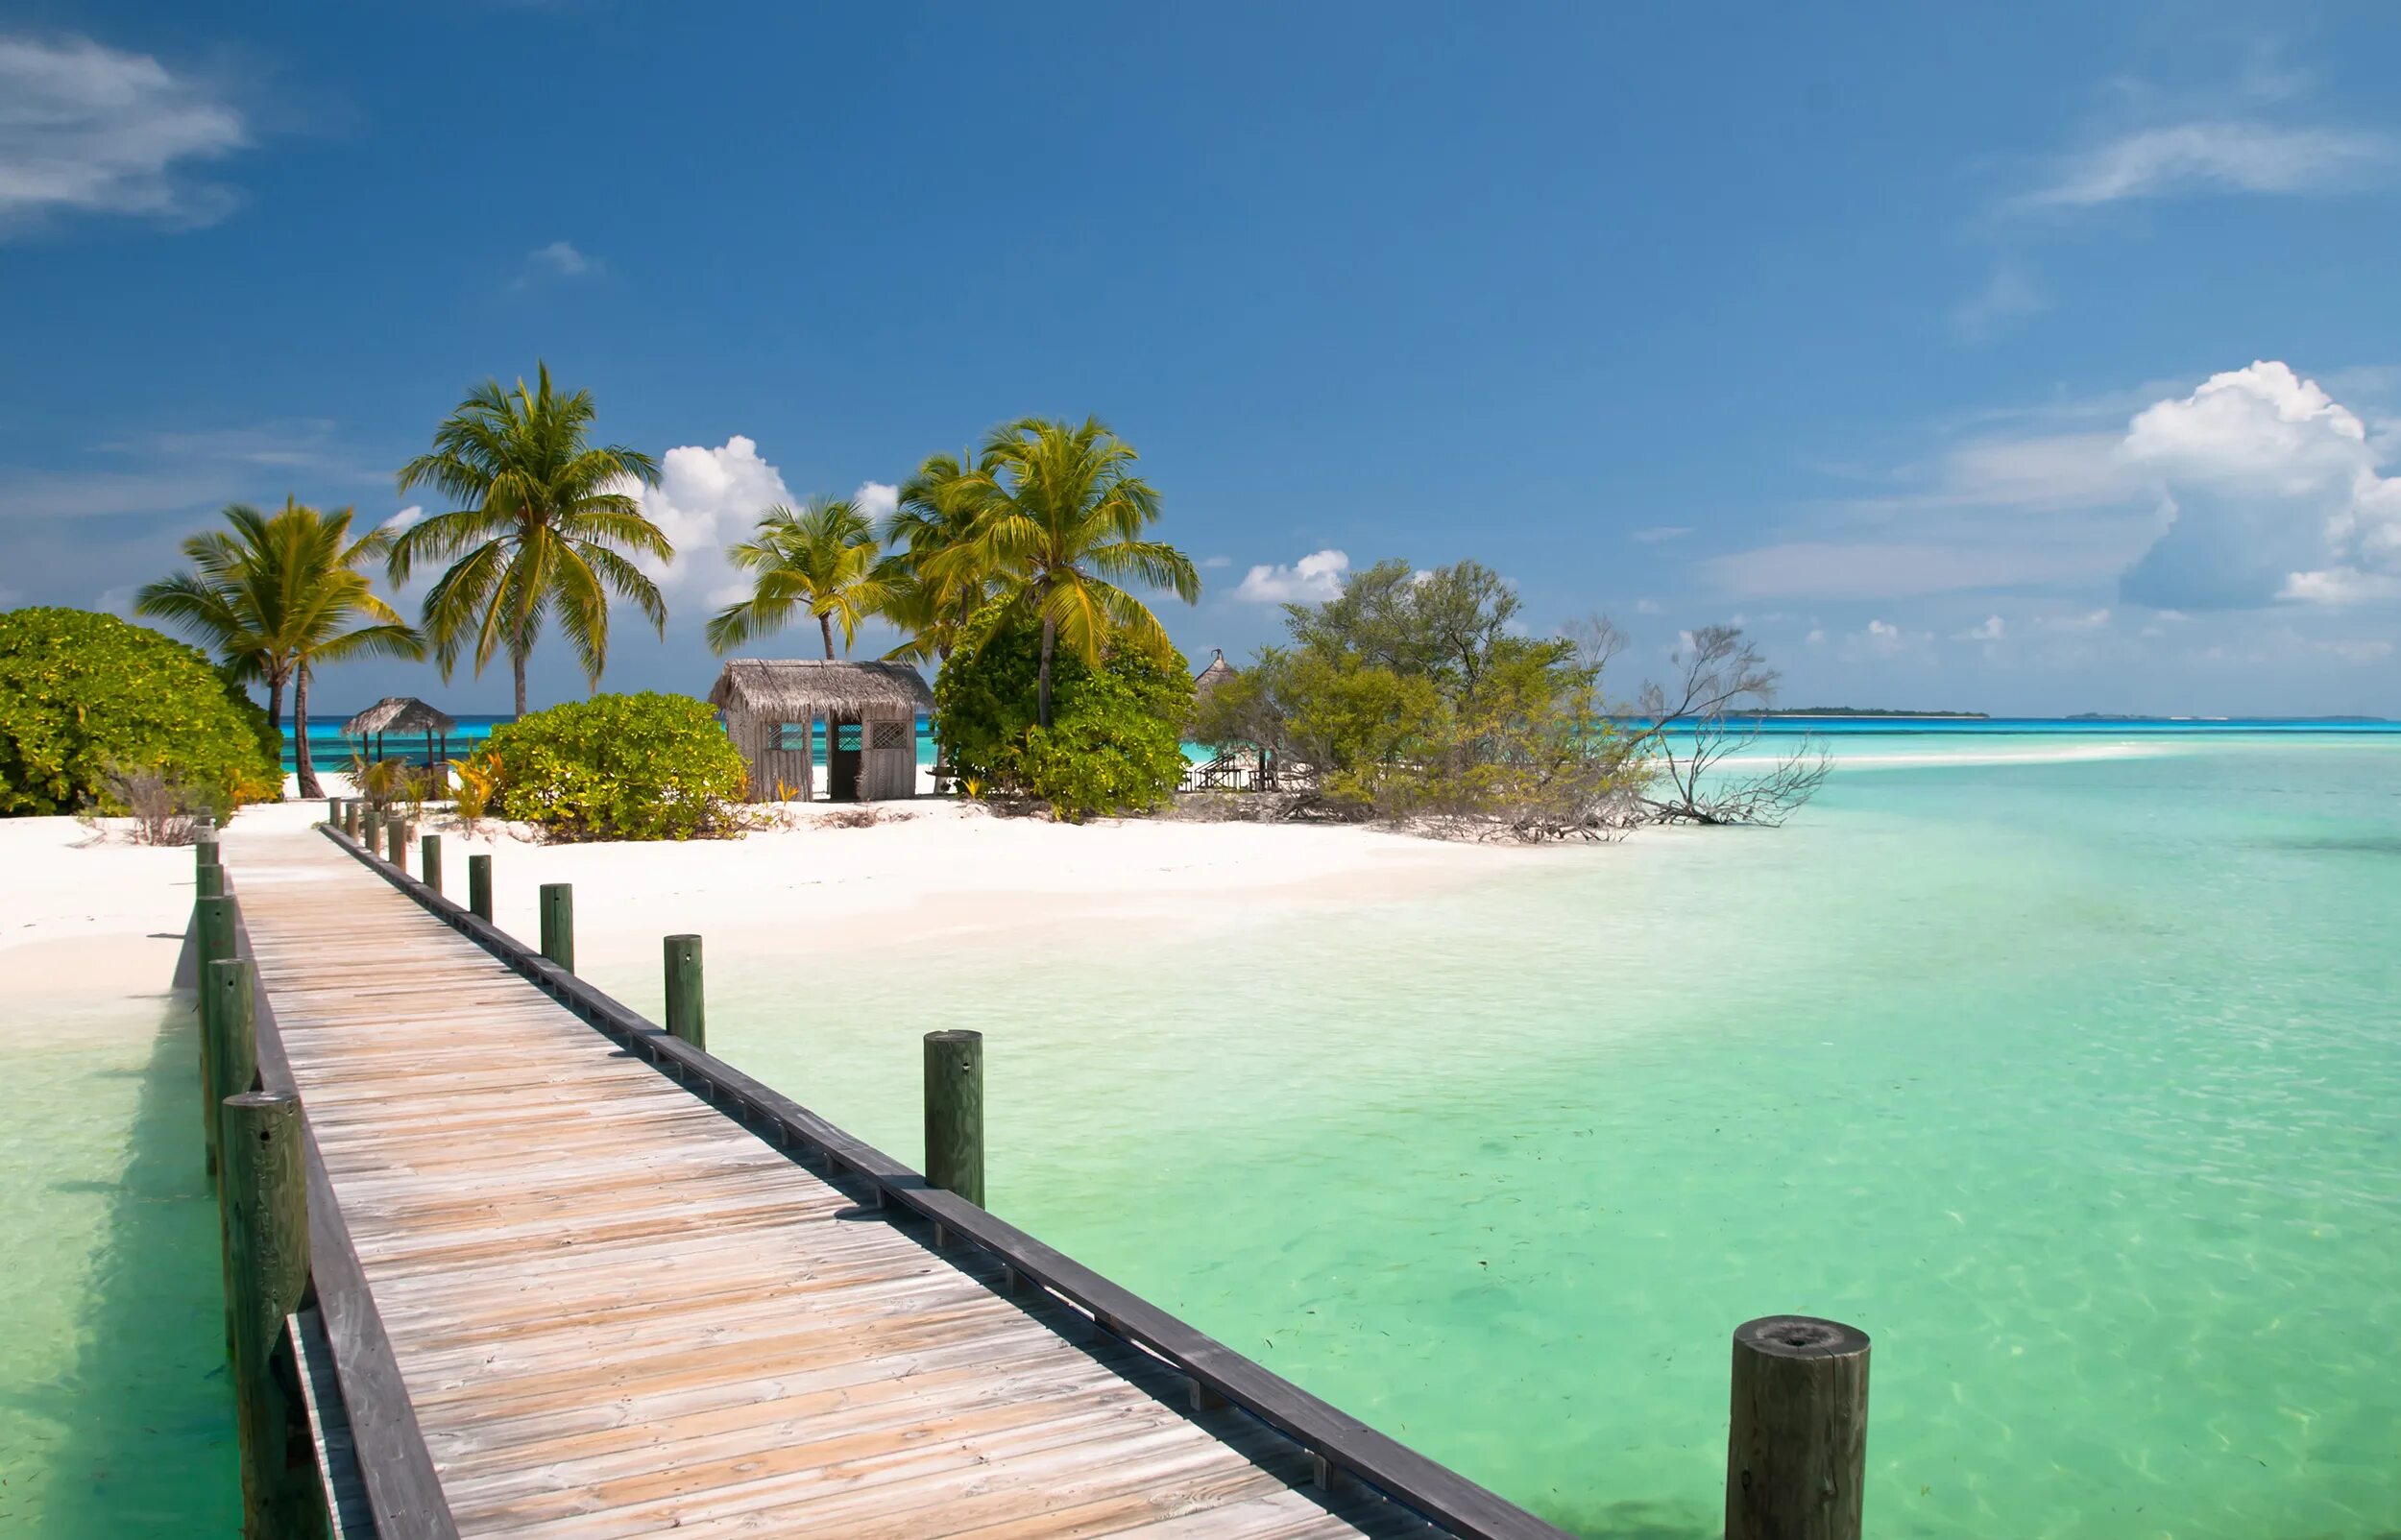 Bahamas islands. Эксума Багамские острова. Багамы остров Тауэр Бэй. Остров Парадайз Багамские острова. Фрипорт Багамы.